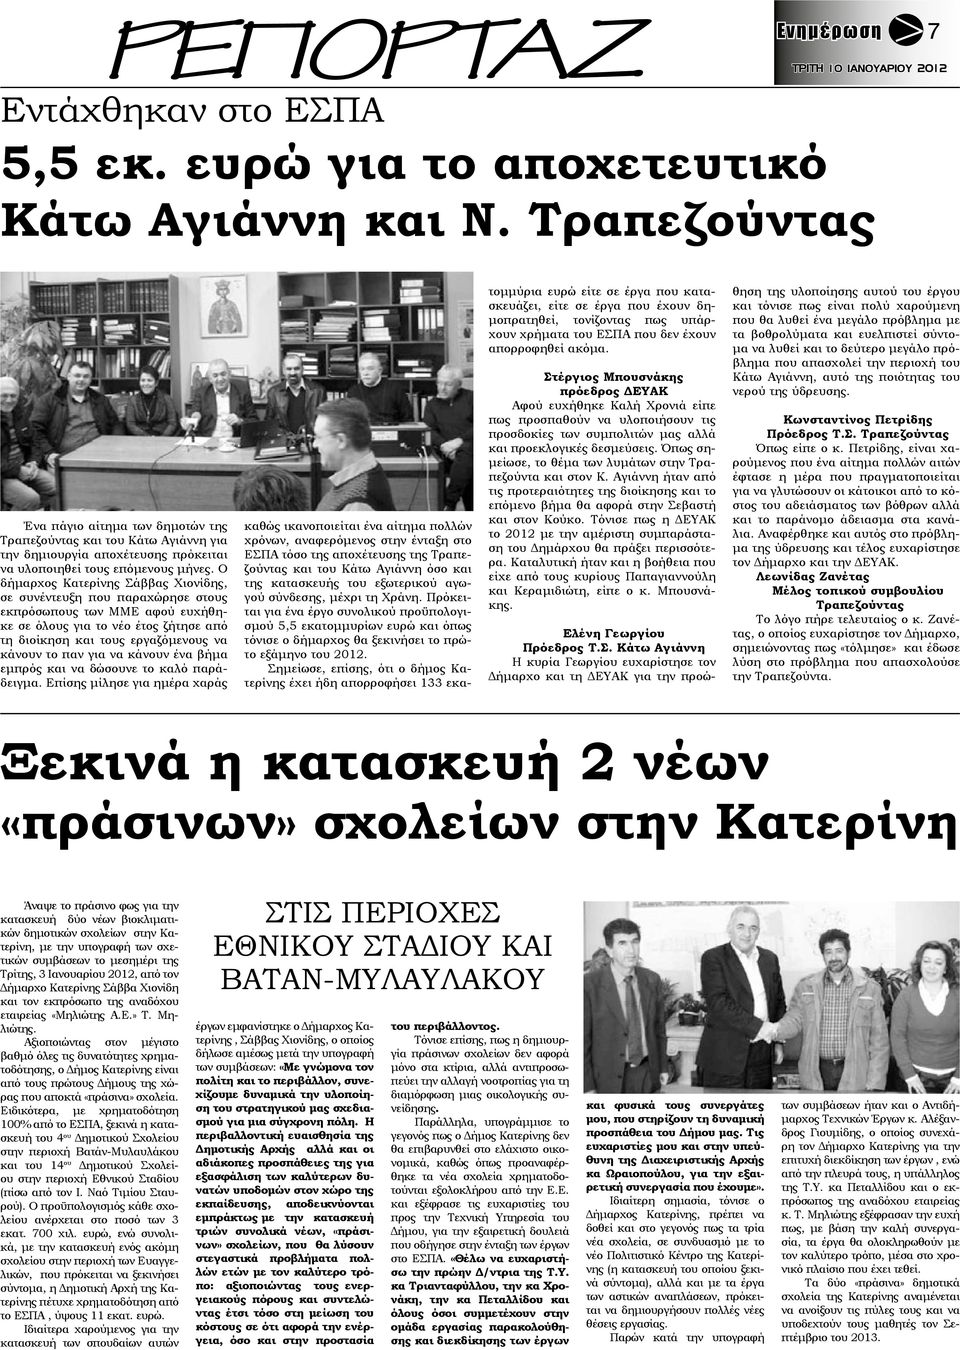 Ο δήμαρχος Κατερίνης Σάββας Χιονίδης, σε συνέντευξη που παραχώρησε στους εκπρόσωπους των ΜΜΕ αφού ευχήθηκε σε όλους για το νέο έτος ζήτησε από τη διοίκηση και τους εργαζόμενους να κάνουν το παν για